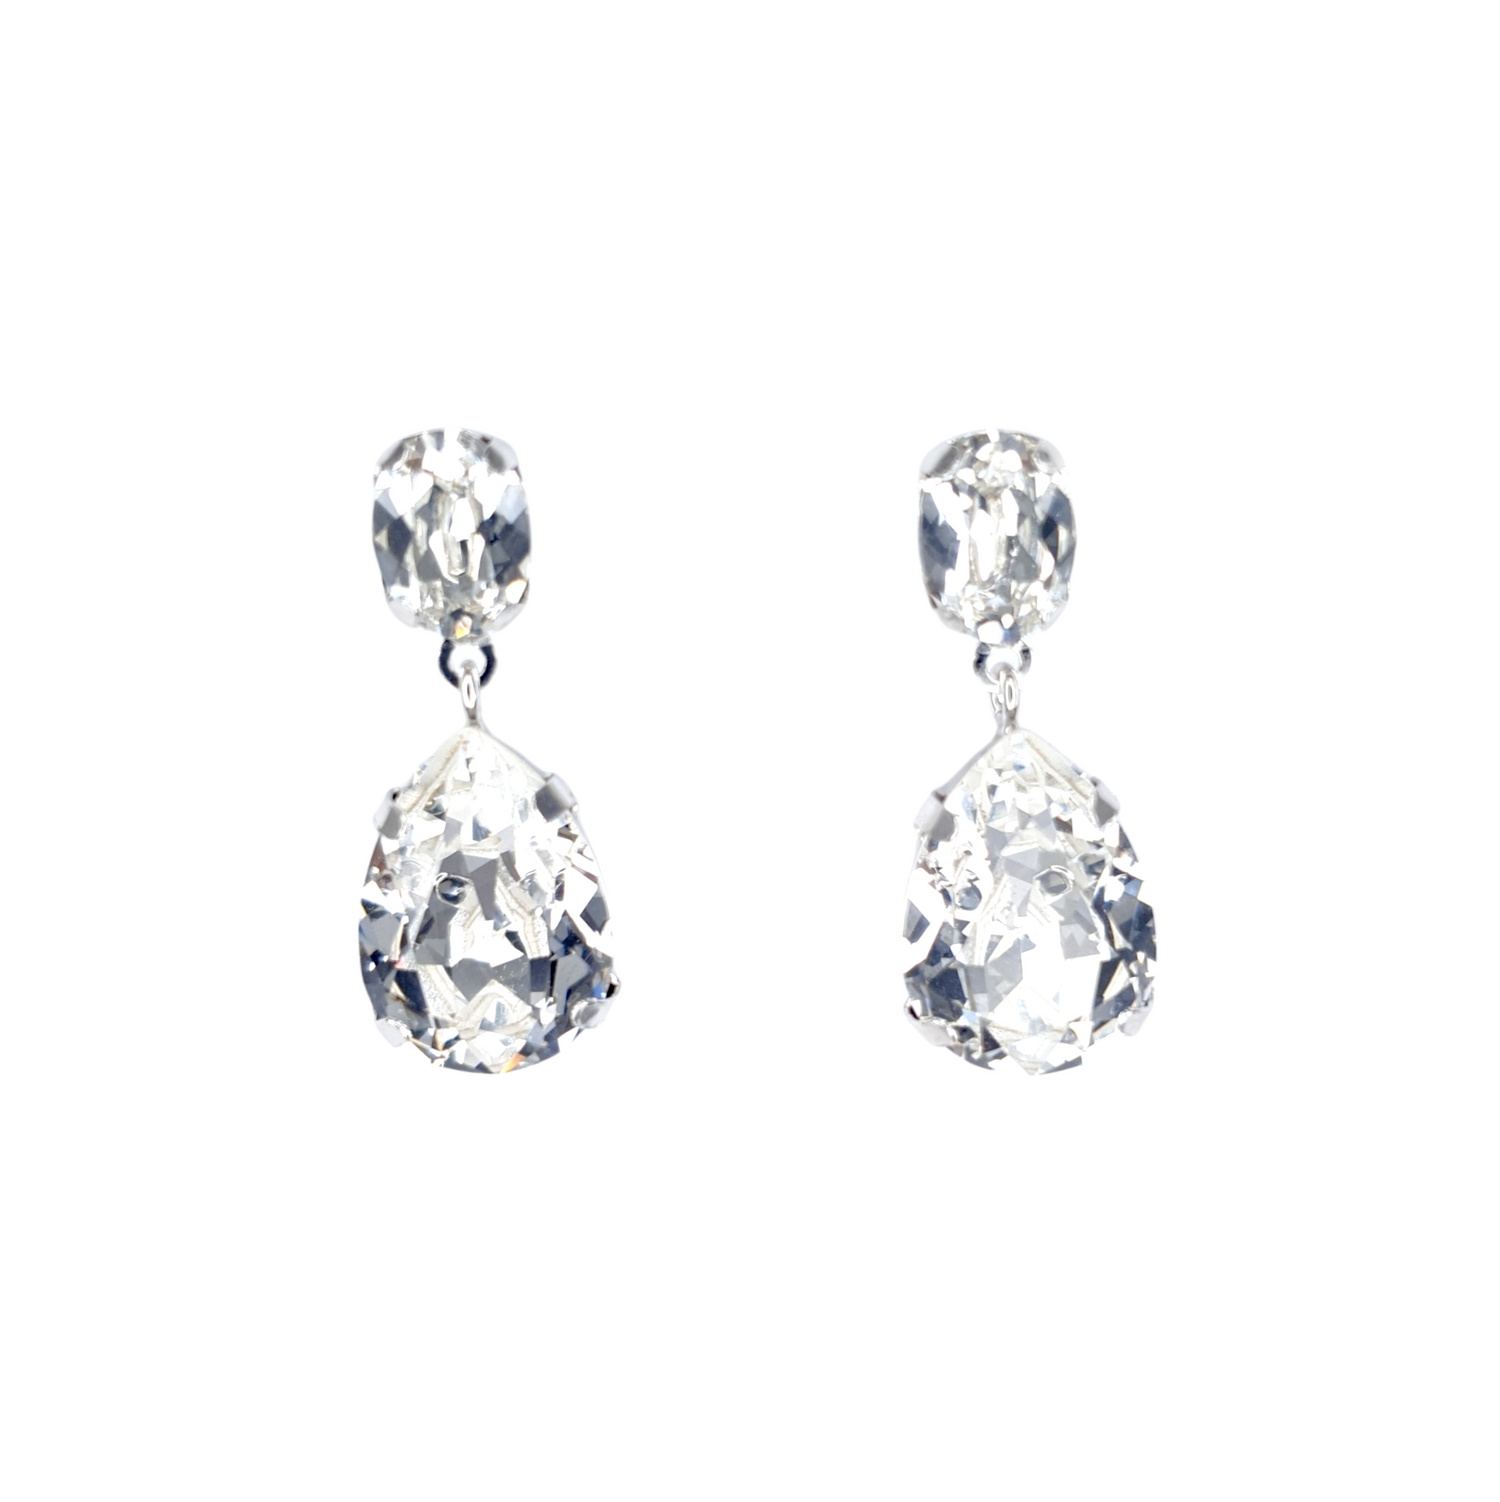 Hänge Ohrringe aus 925 Silber mit großen weißen Swarovski Kristallen, je Ohrring zwei ovale Kristalle, einer oben und einer unten. 